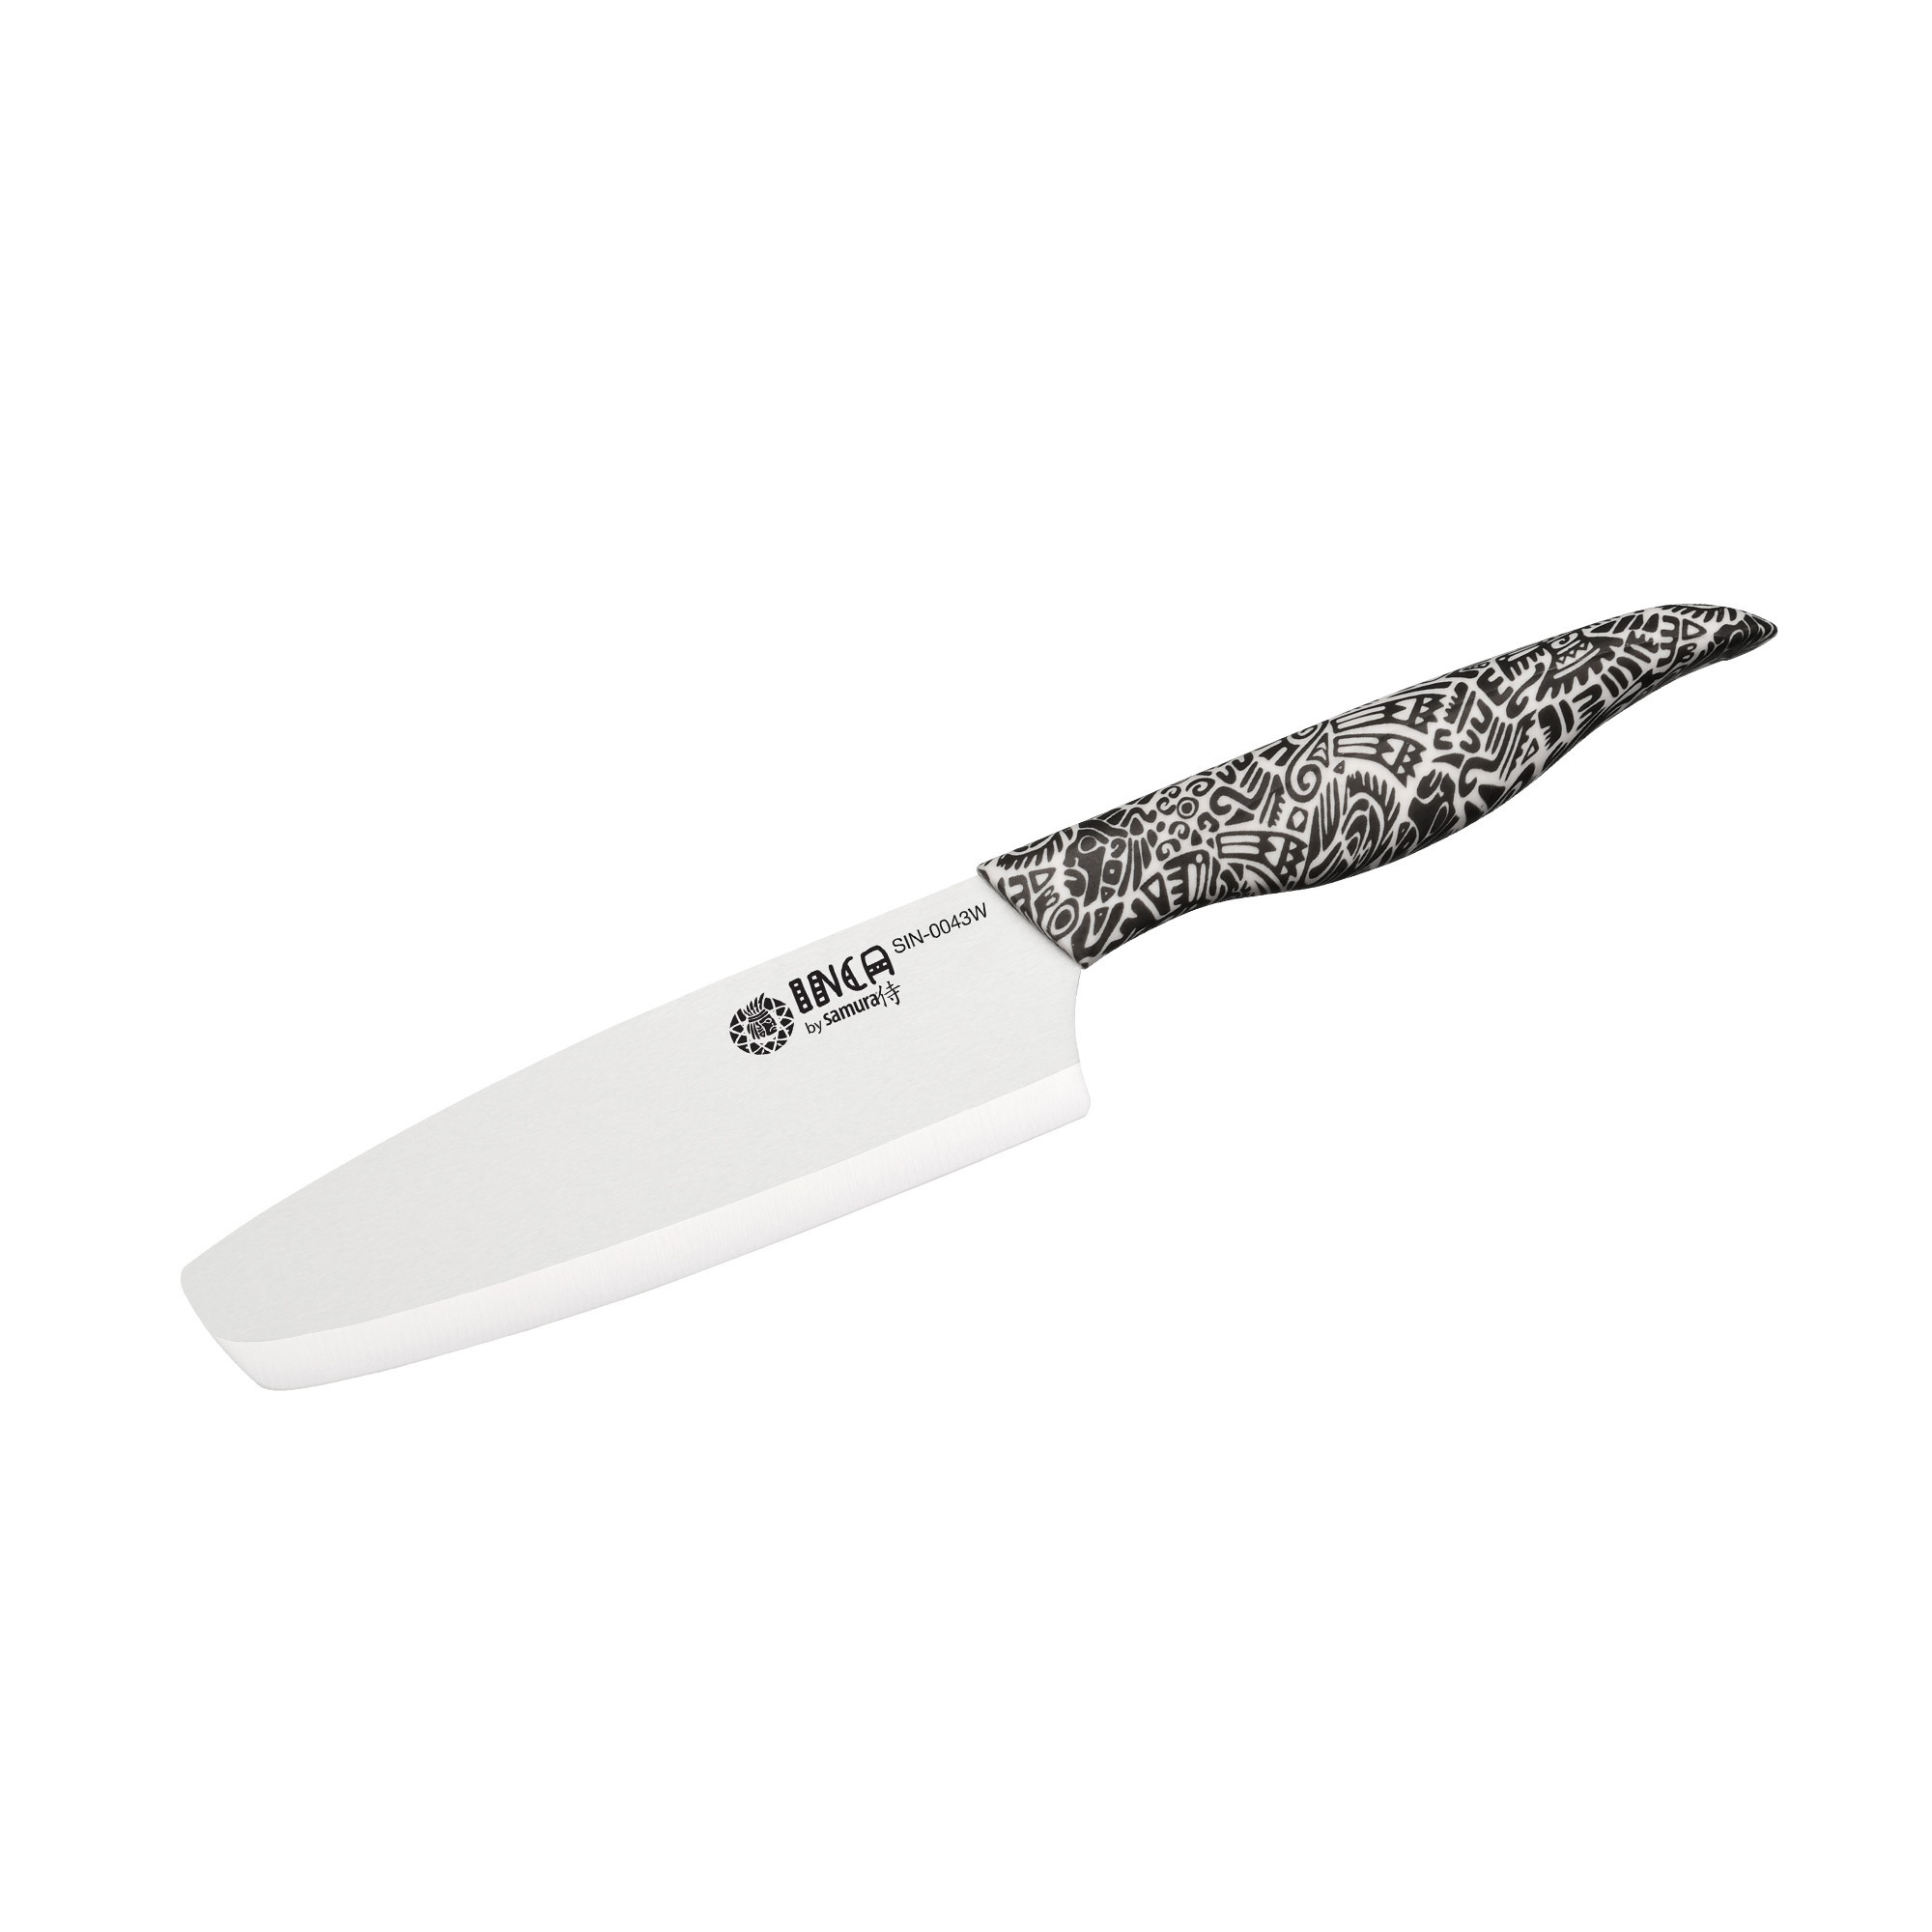 Нож кухонный накири Samura Inca 165 мм, белая циркониевая керамика, рукоять пластик - фото 1